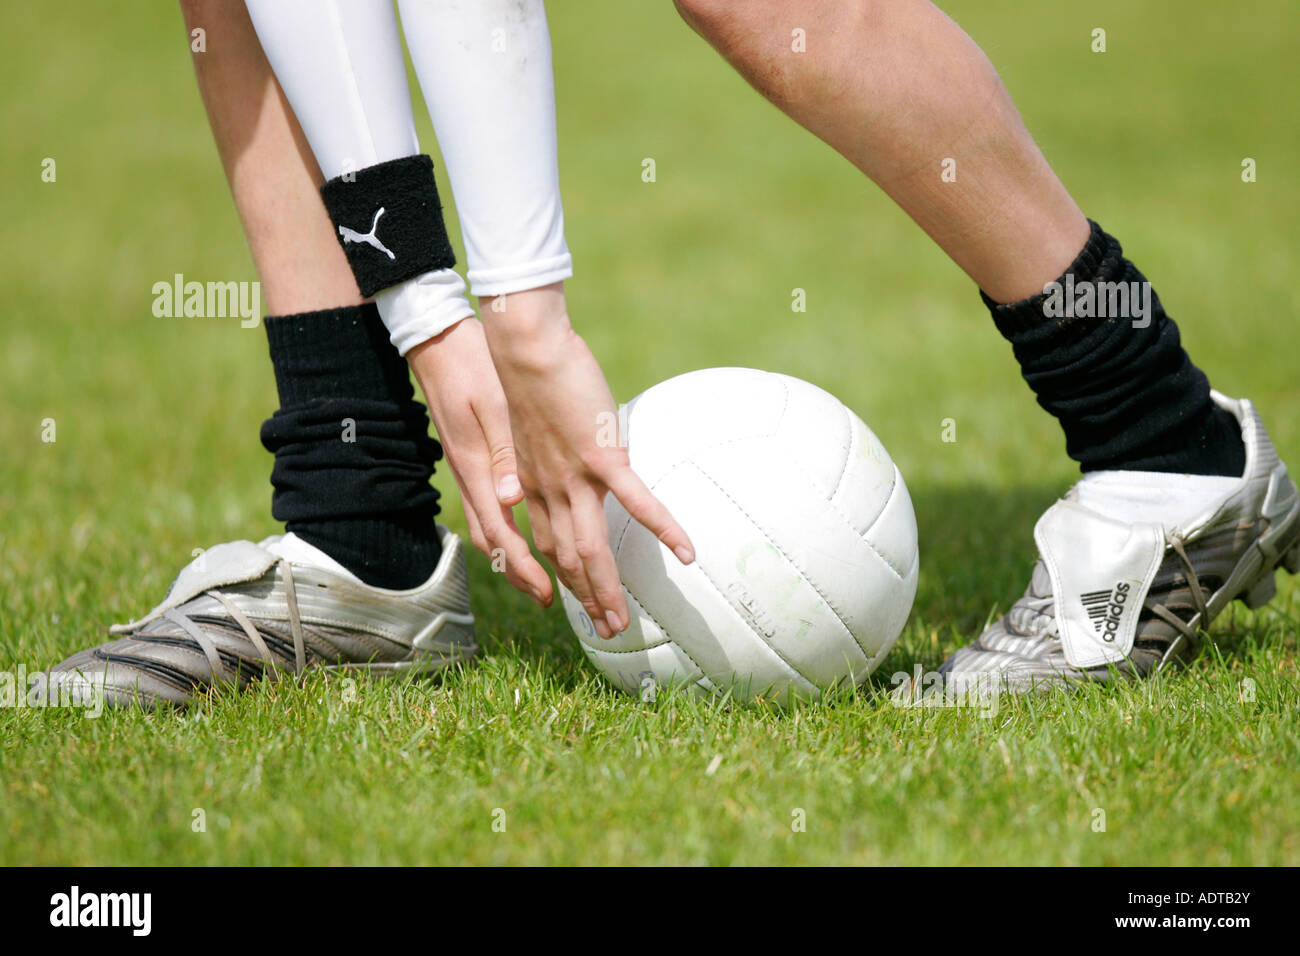 Ragazzo adolescente dimostra il modo tradizionale di prelevare il calcio in alto da terra durante il calcio gaelico gioco Foto Stock